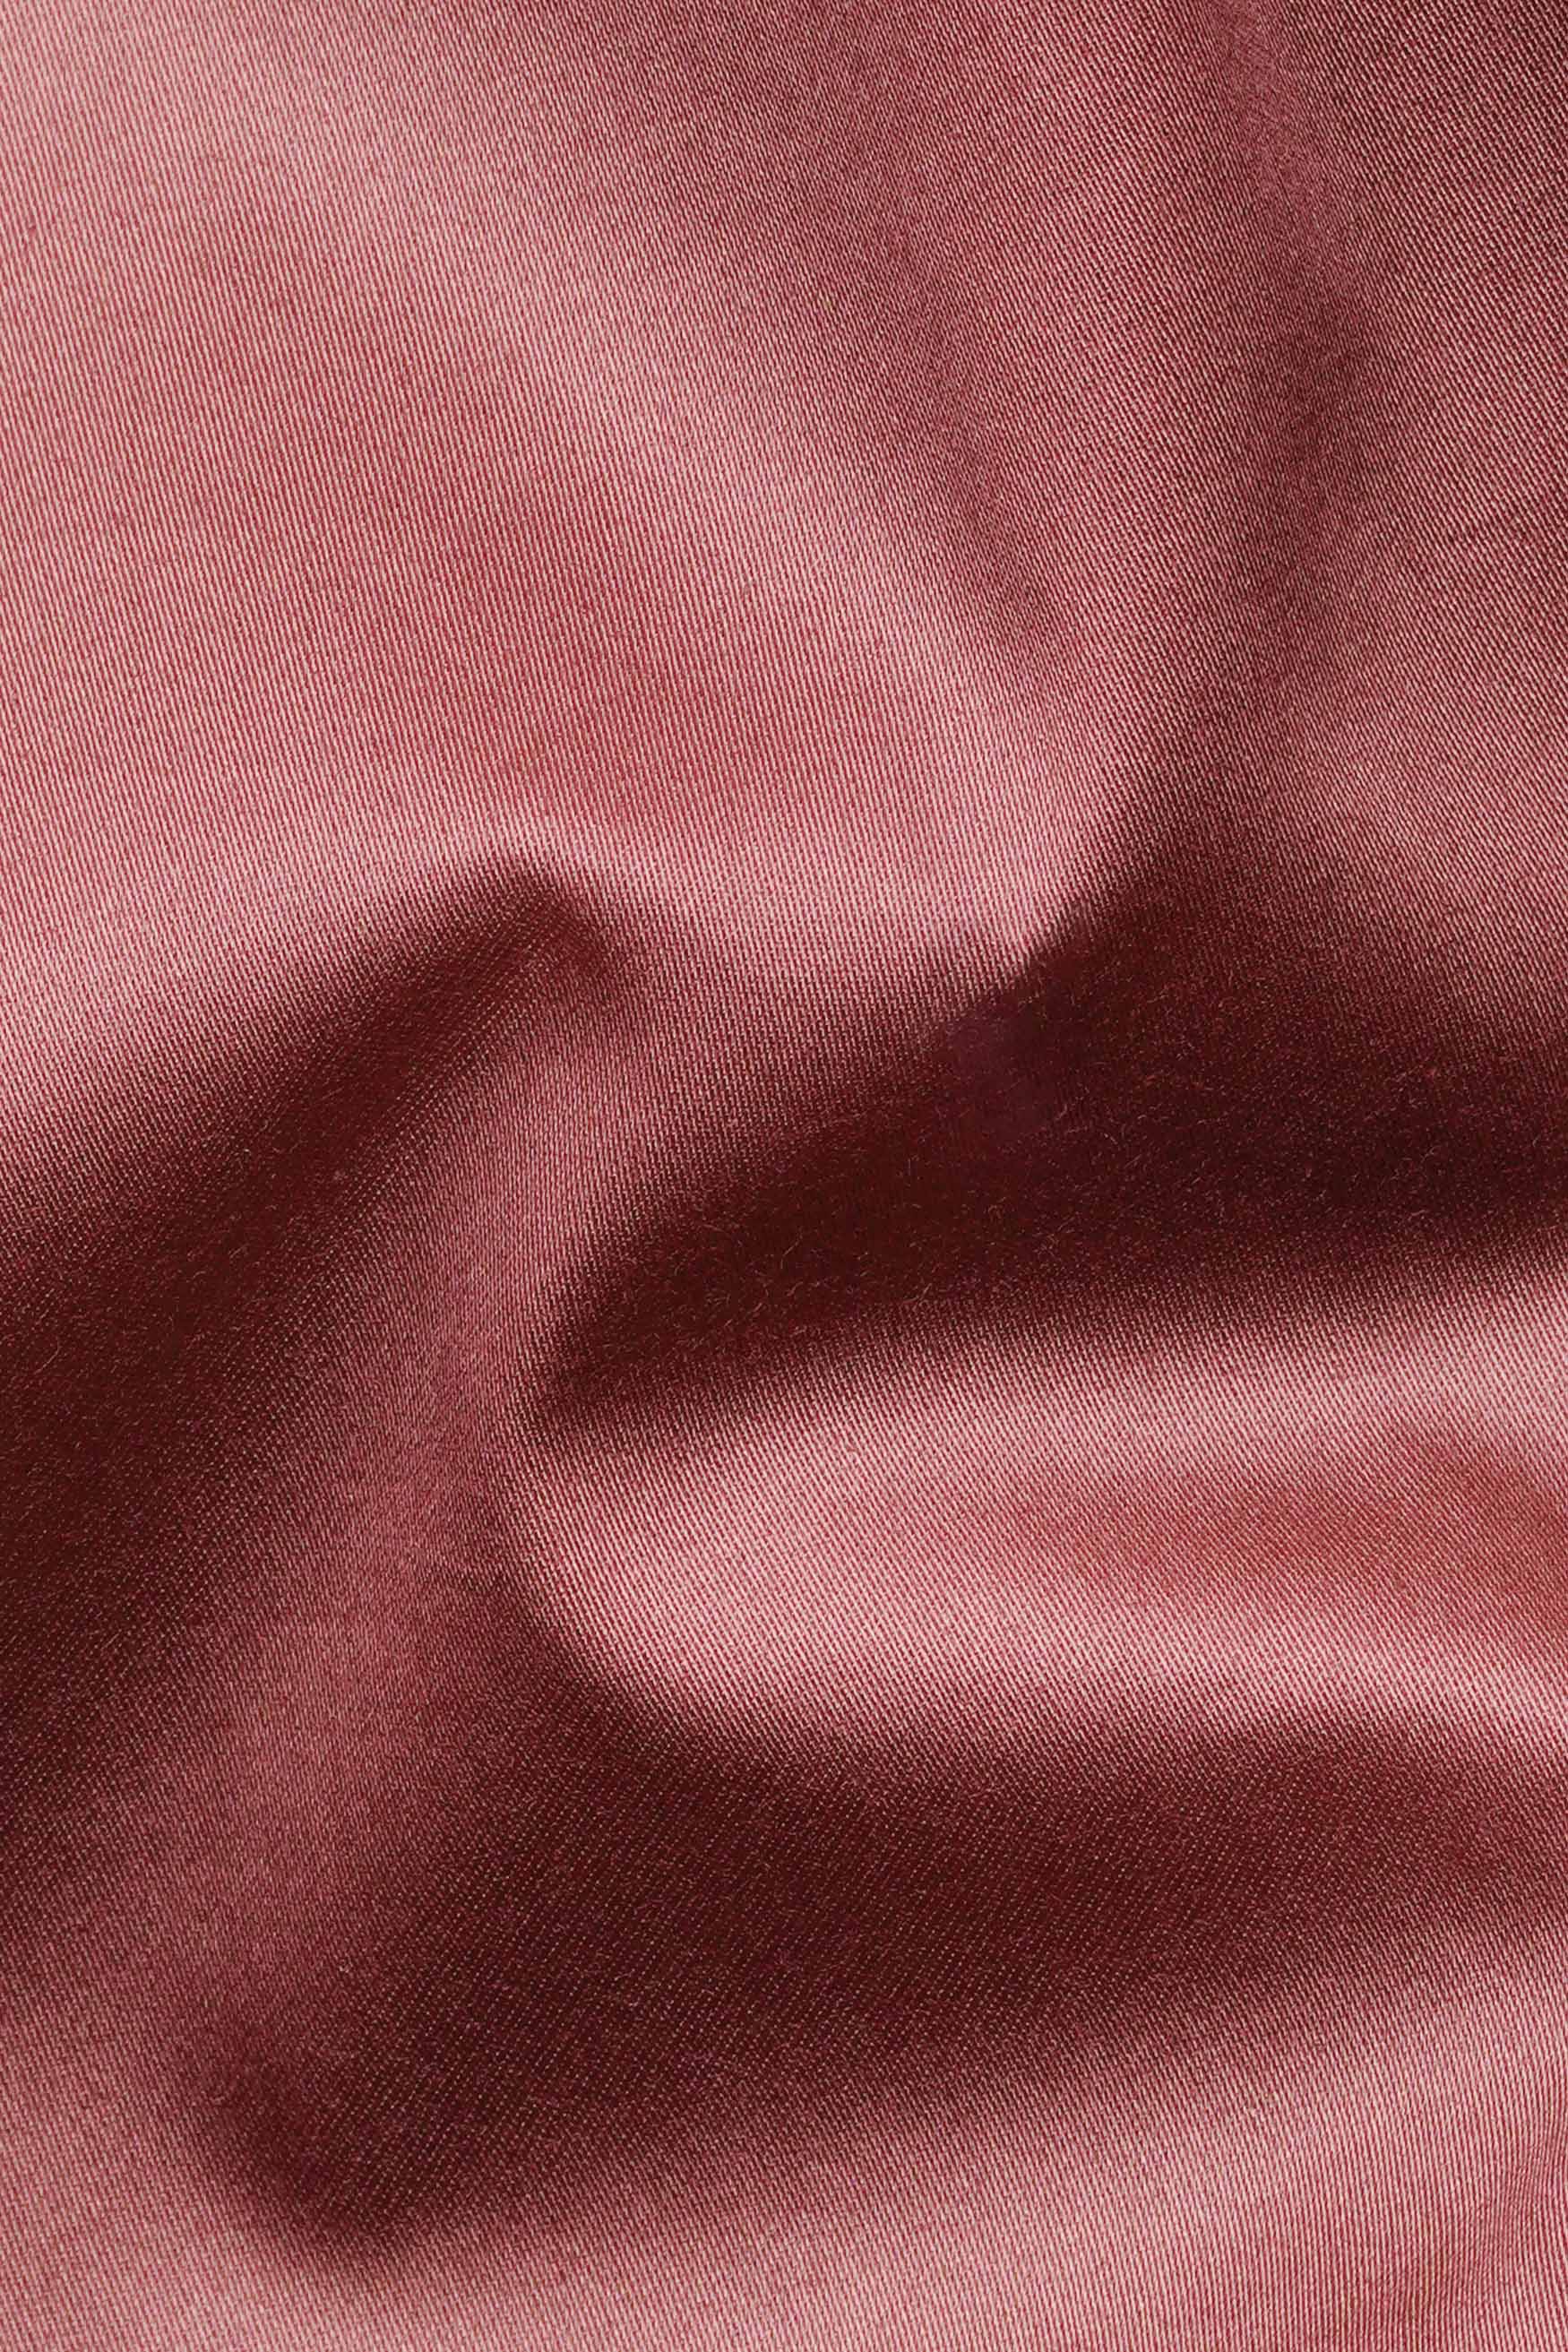 Coral Pink Subtle Sheen Super Soft Premium Cotton Shirt